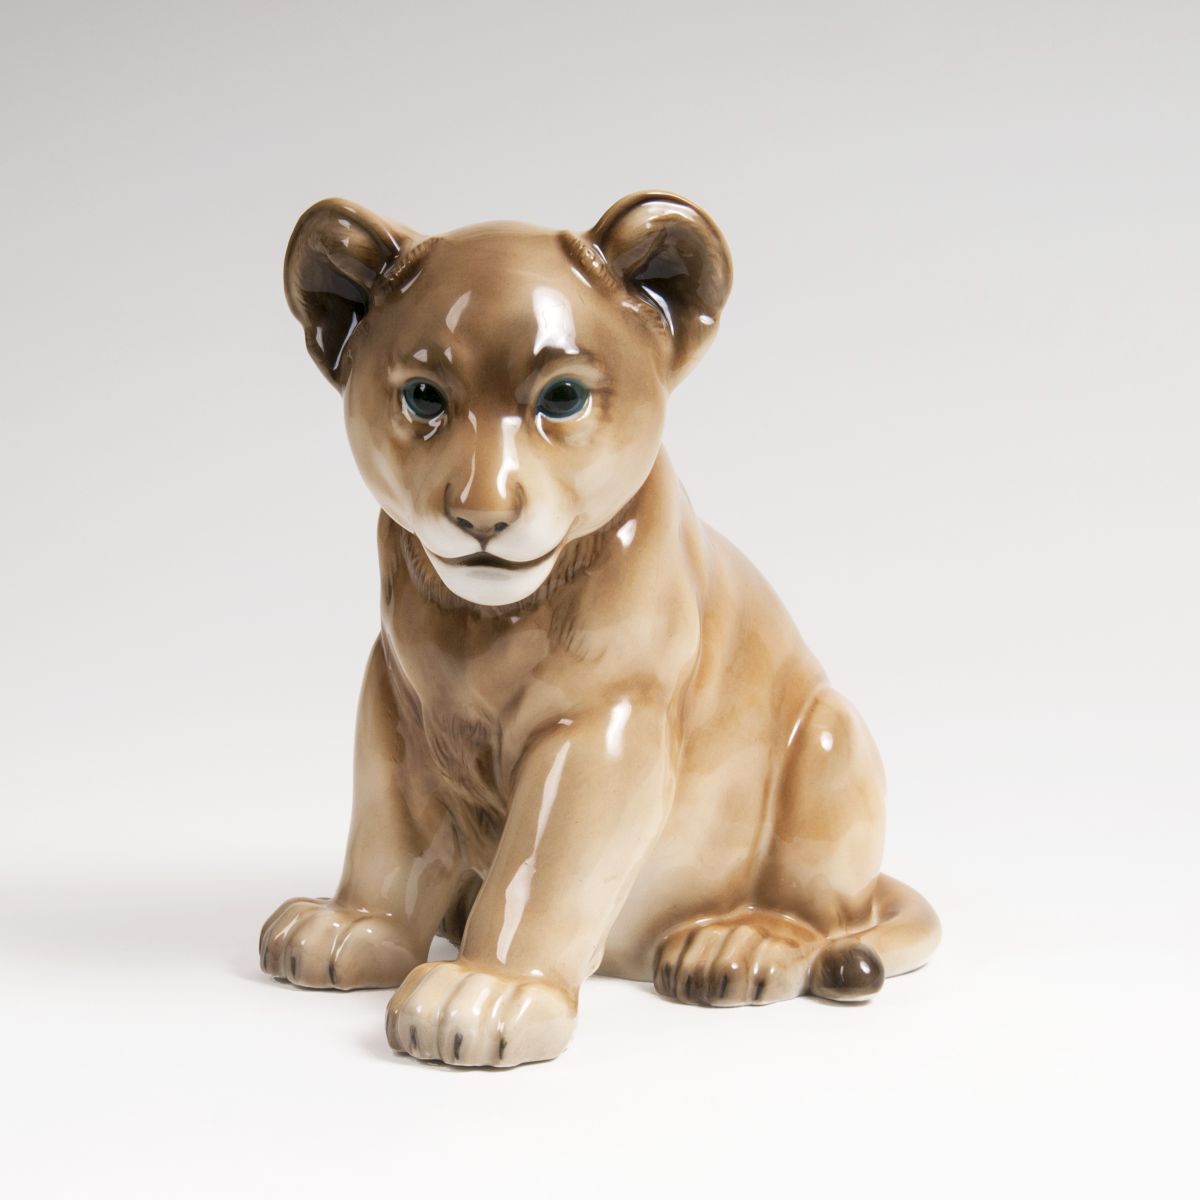 A Porcelain Animal Sculpture 'Young Lion'